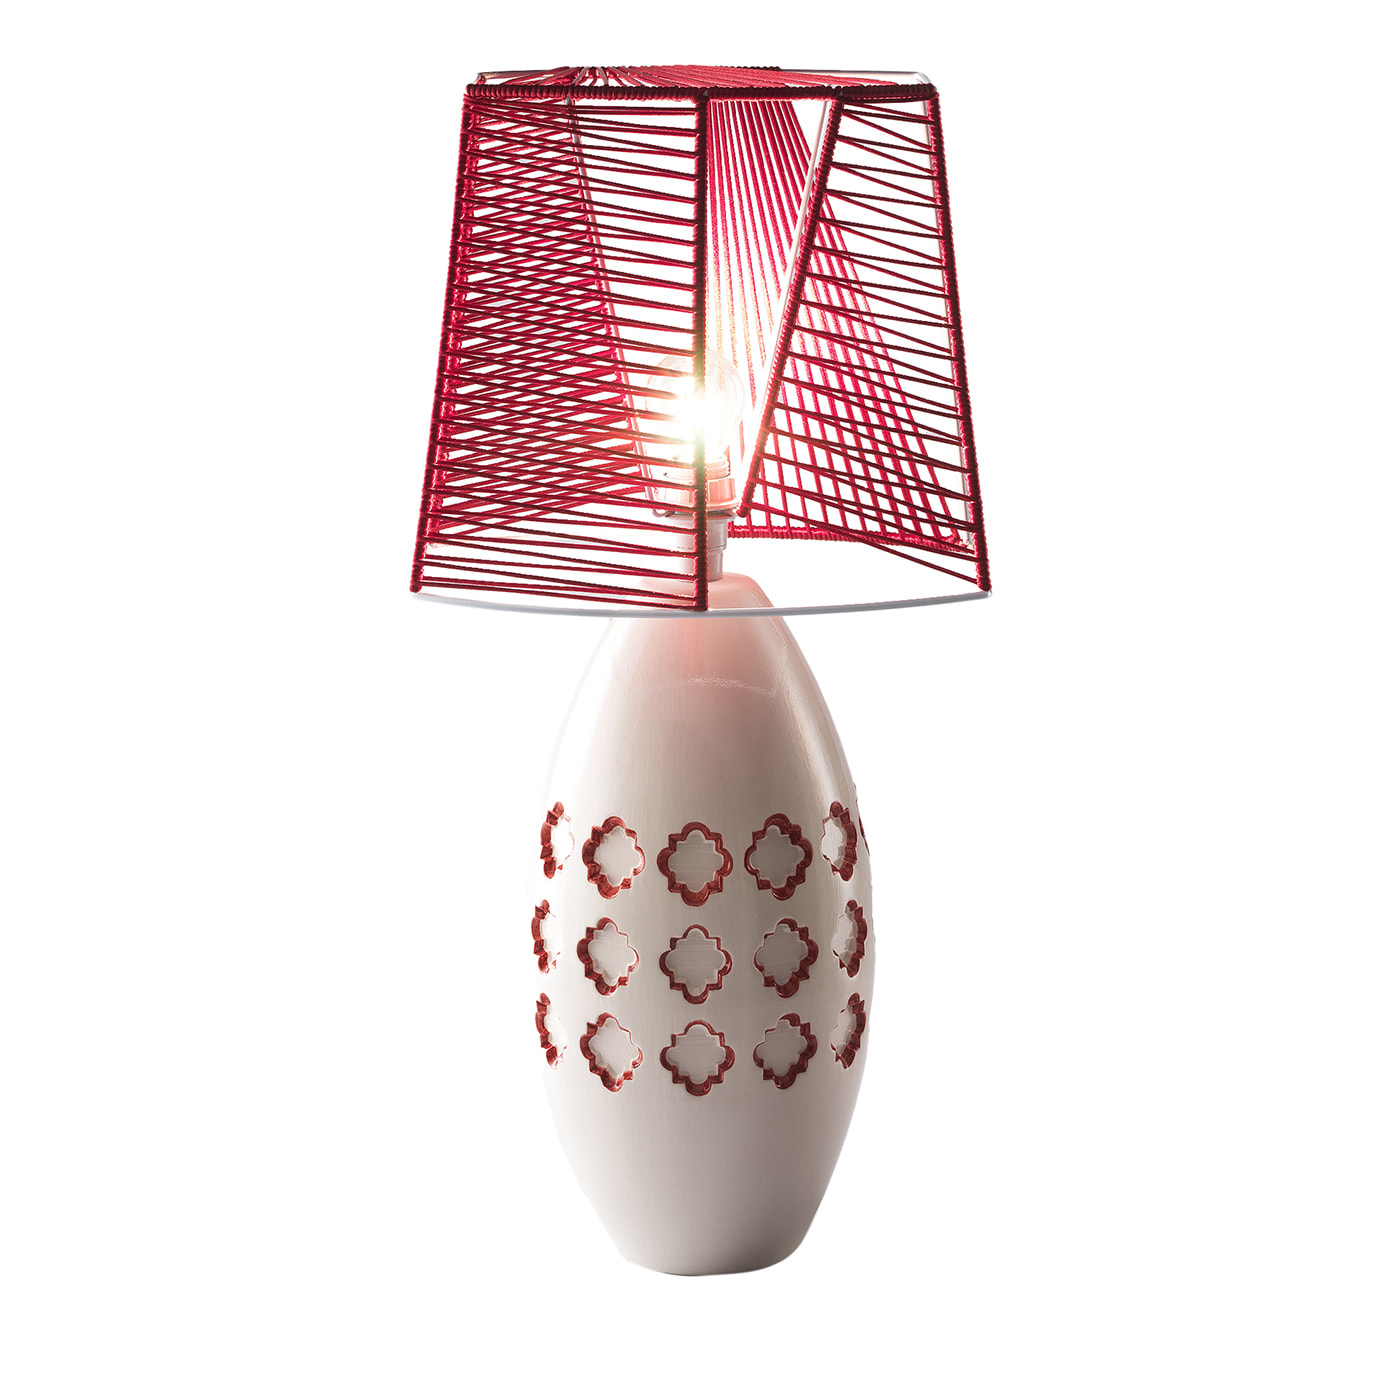 Cherry-Red Table Lamp by M.A. Taticchi & Giacomo Benedetti - Materia Ceramica